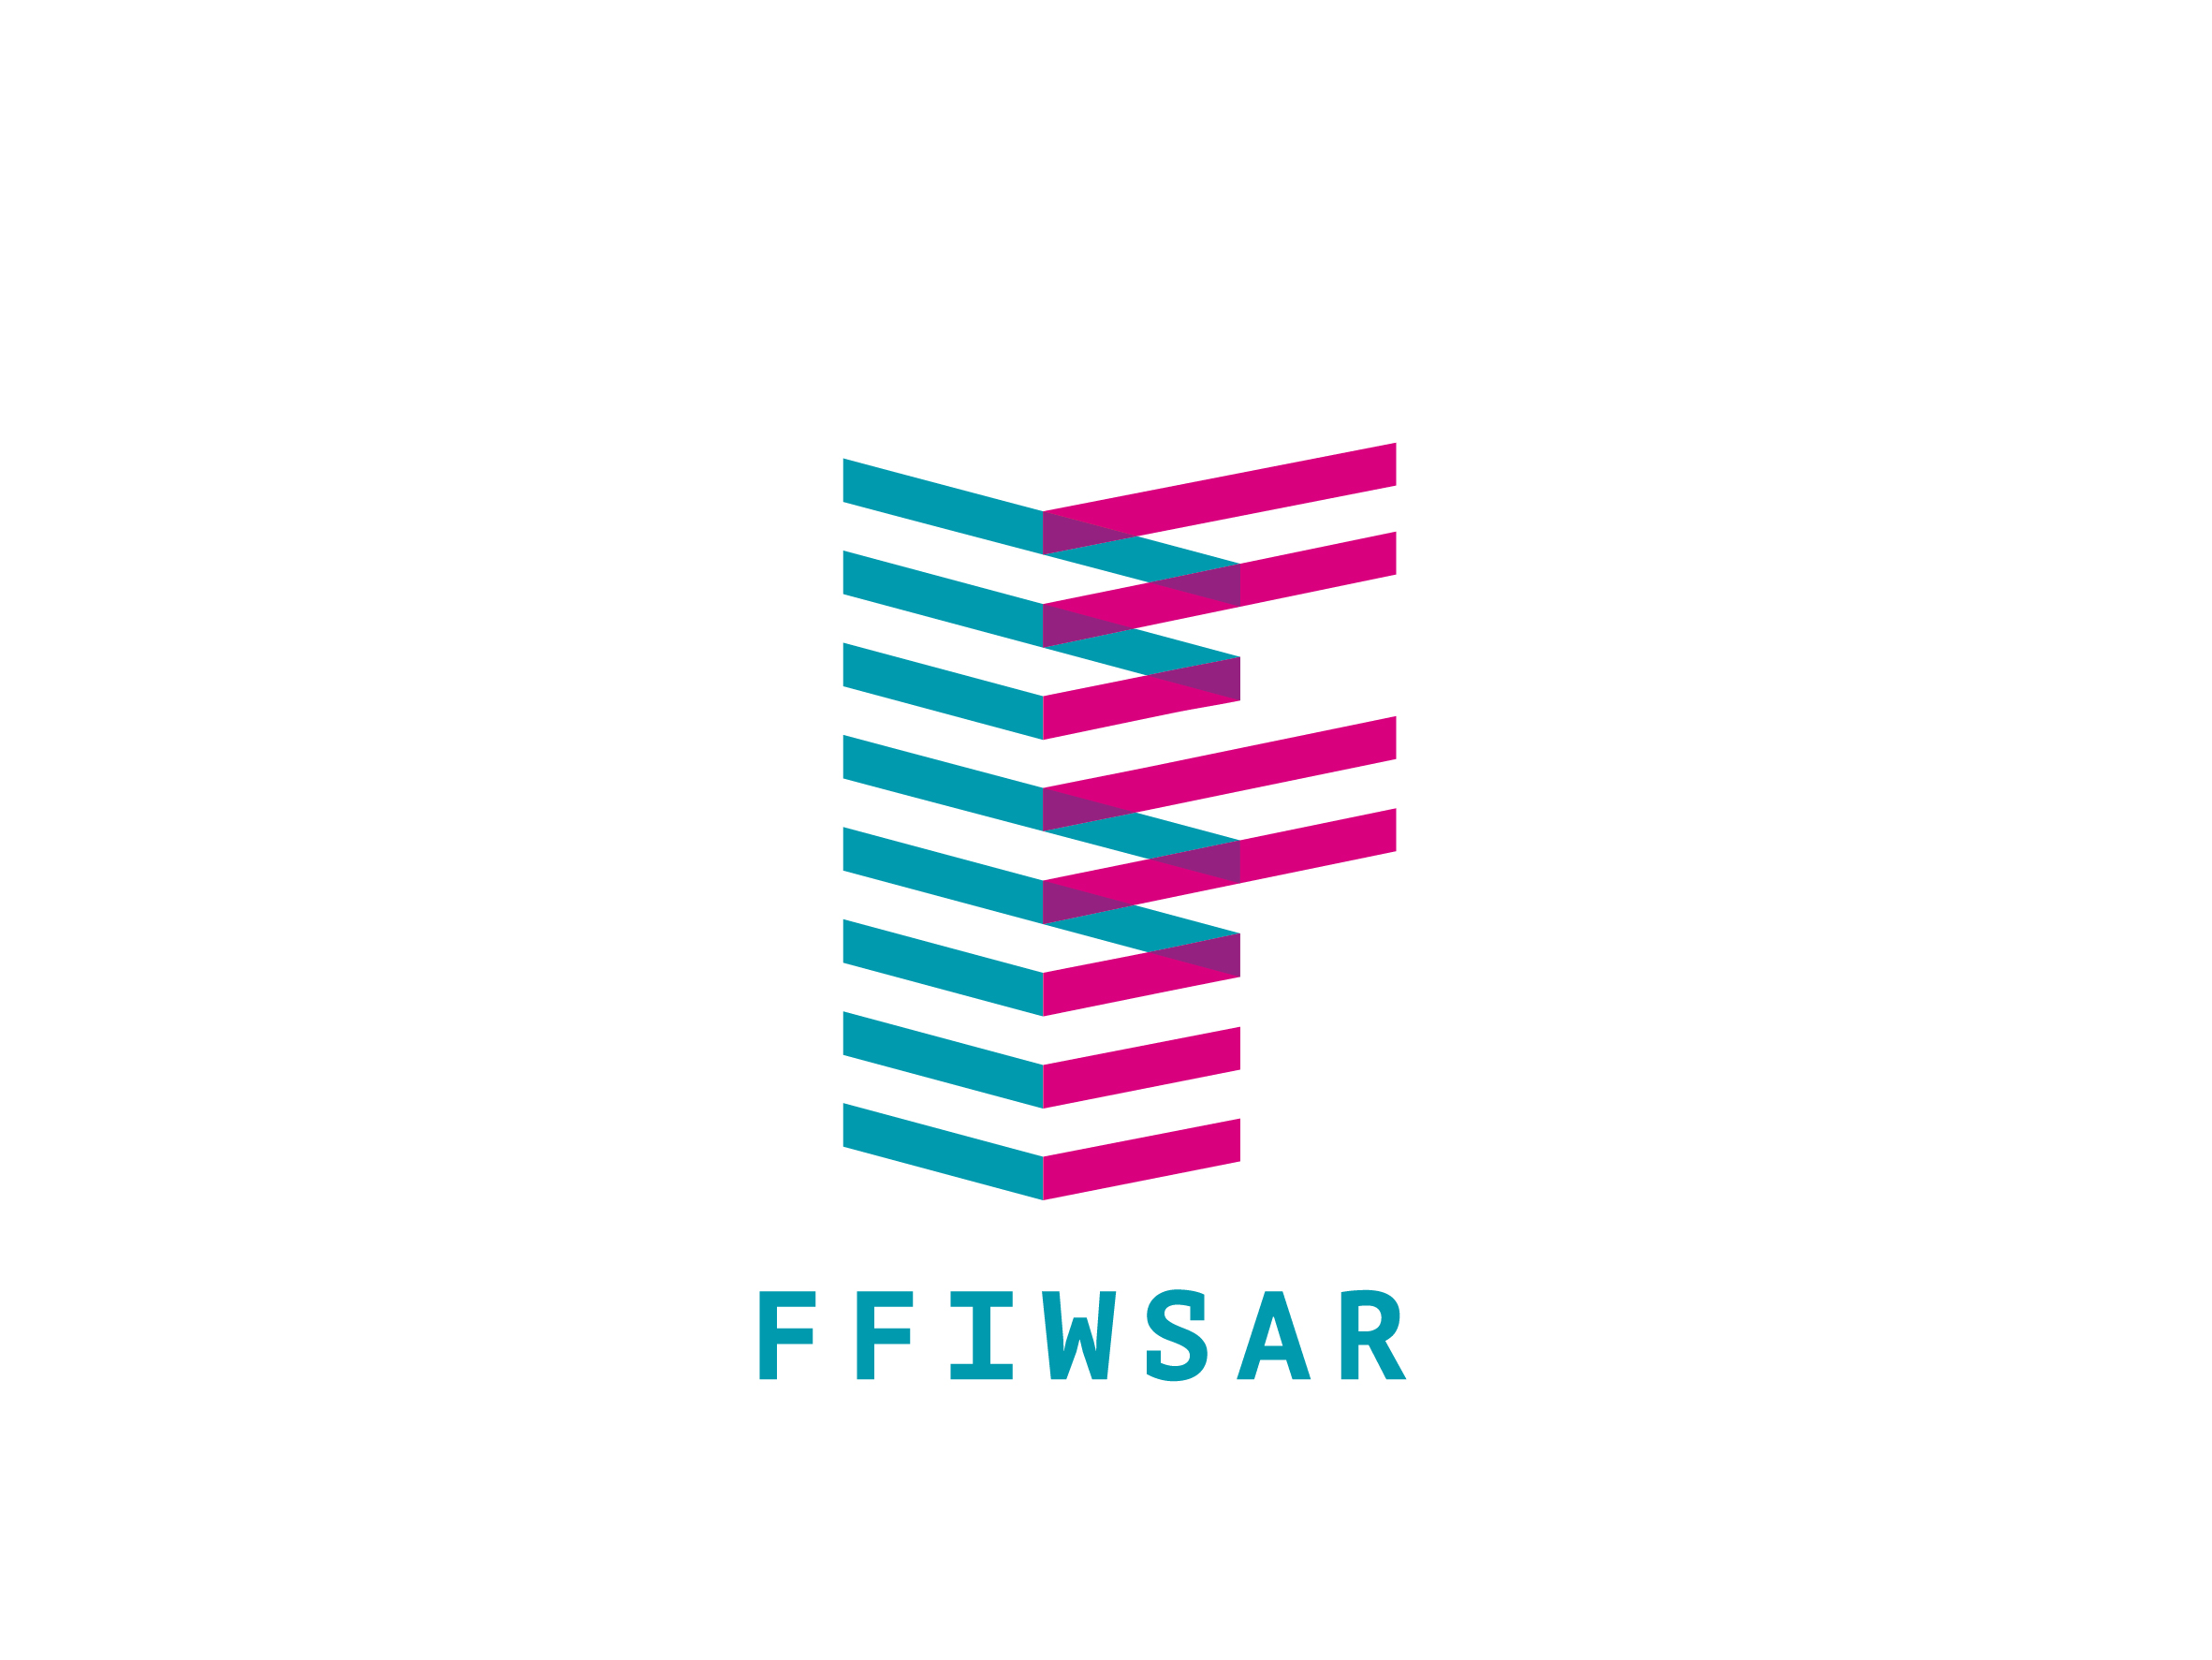 Ffiwsar